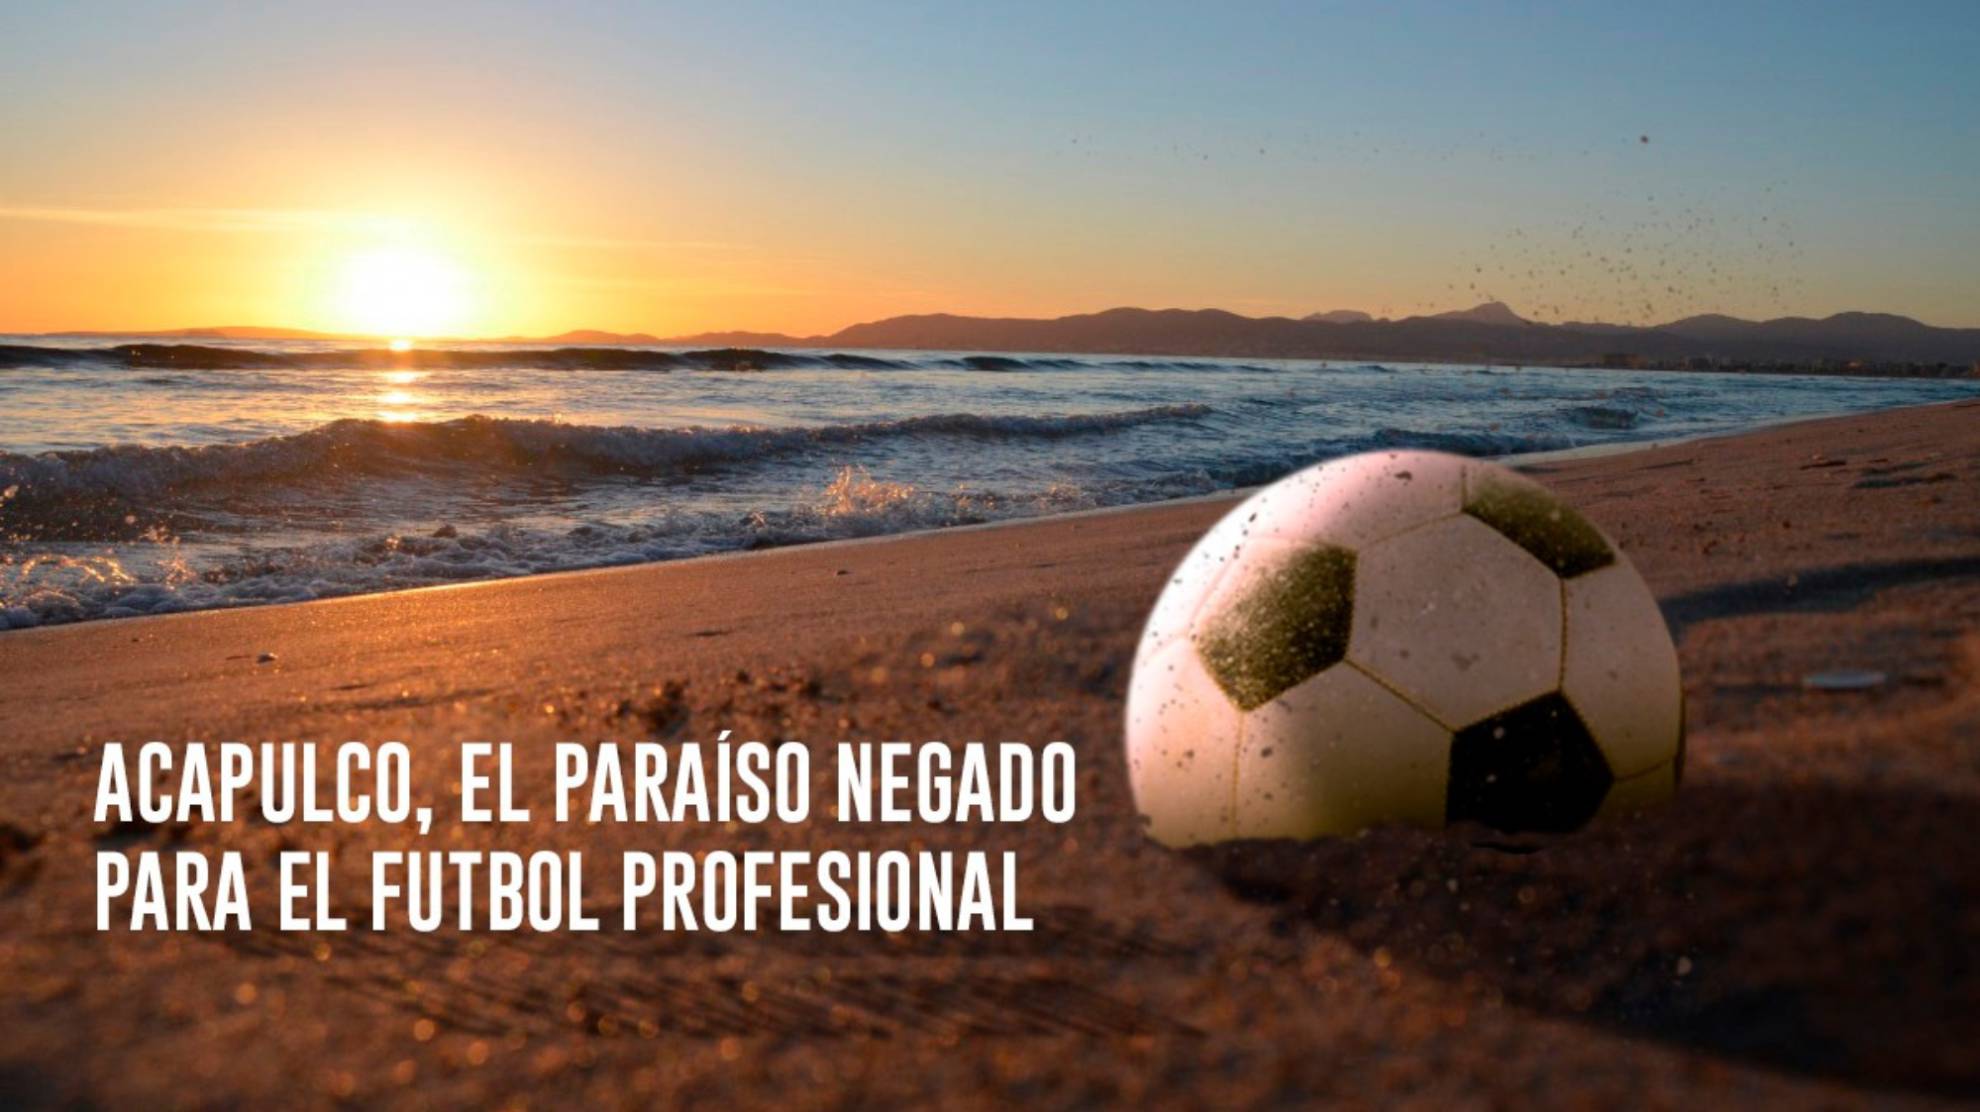 Acapulco, el paraíso negado para el futbol profesional